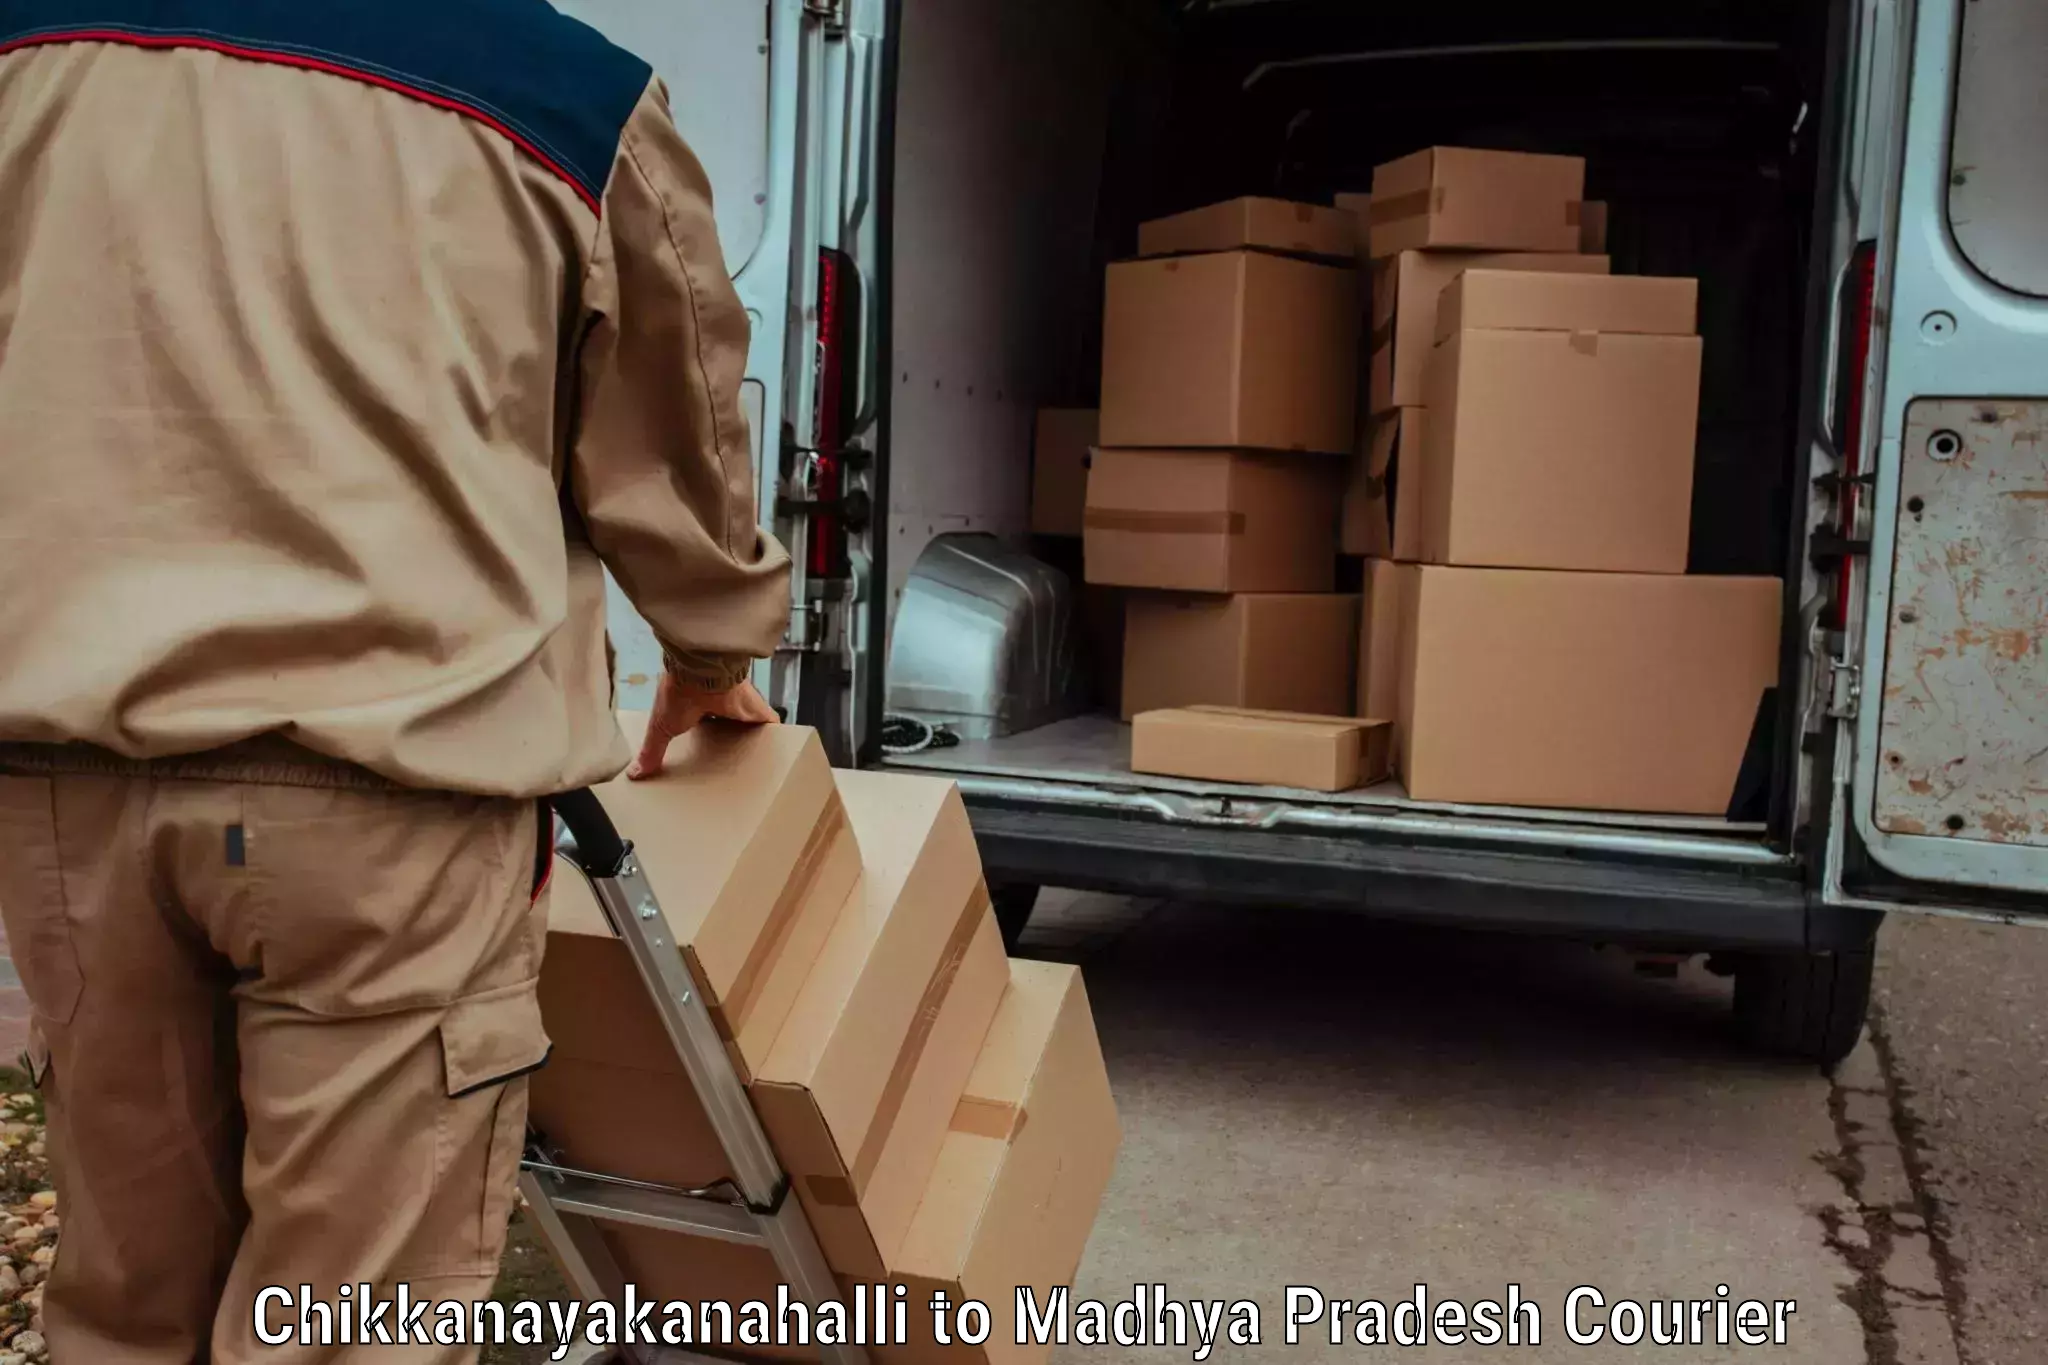 Baggage relocation service Chikkanayakanahalli to Madhya Pradesh